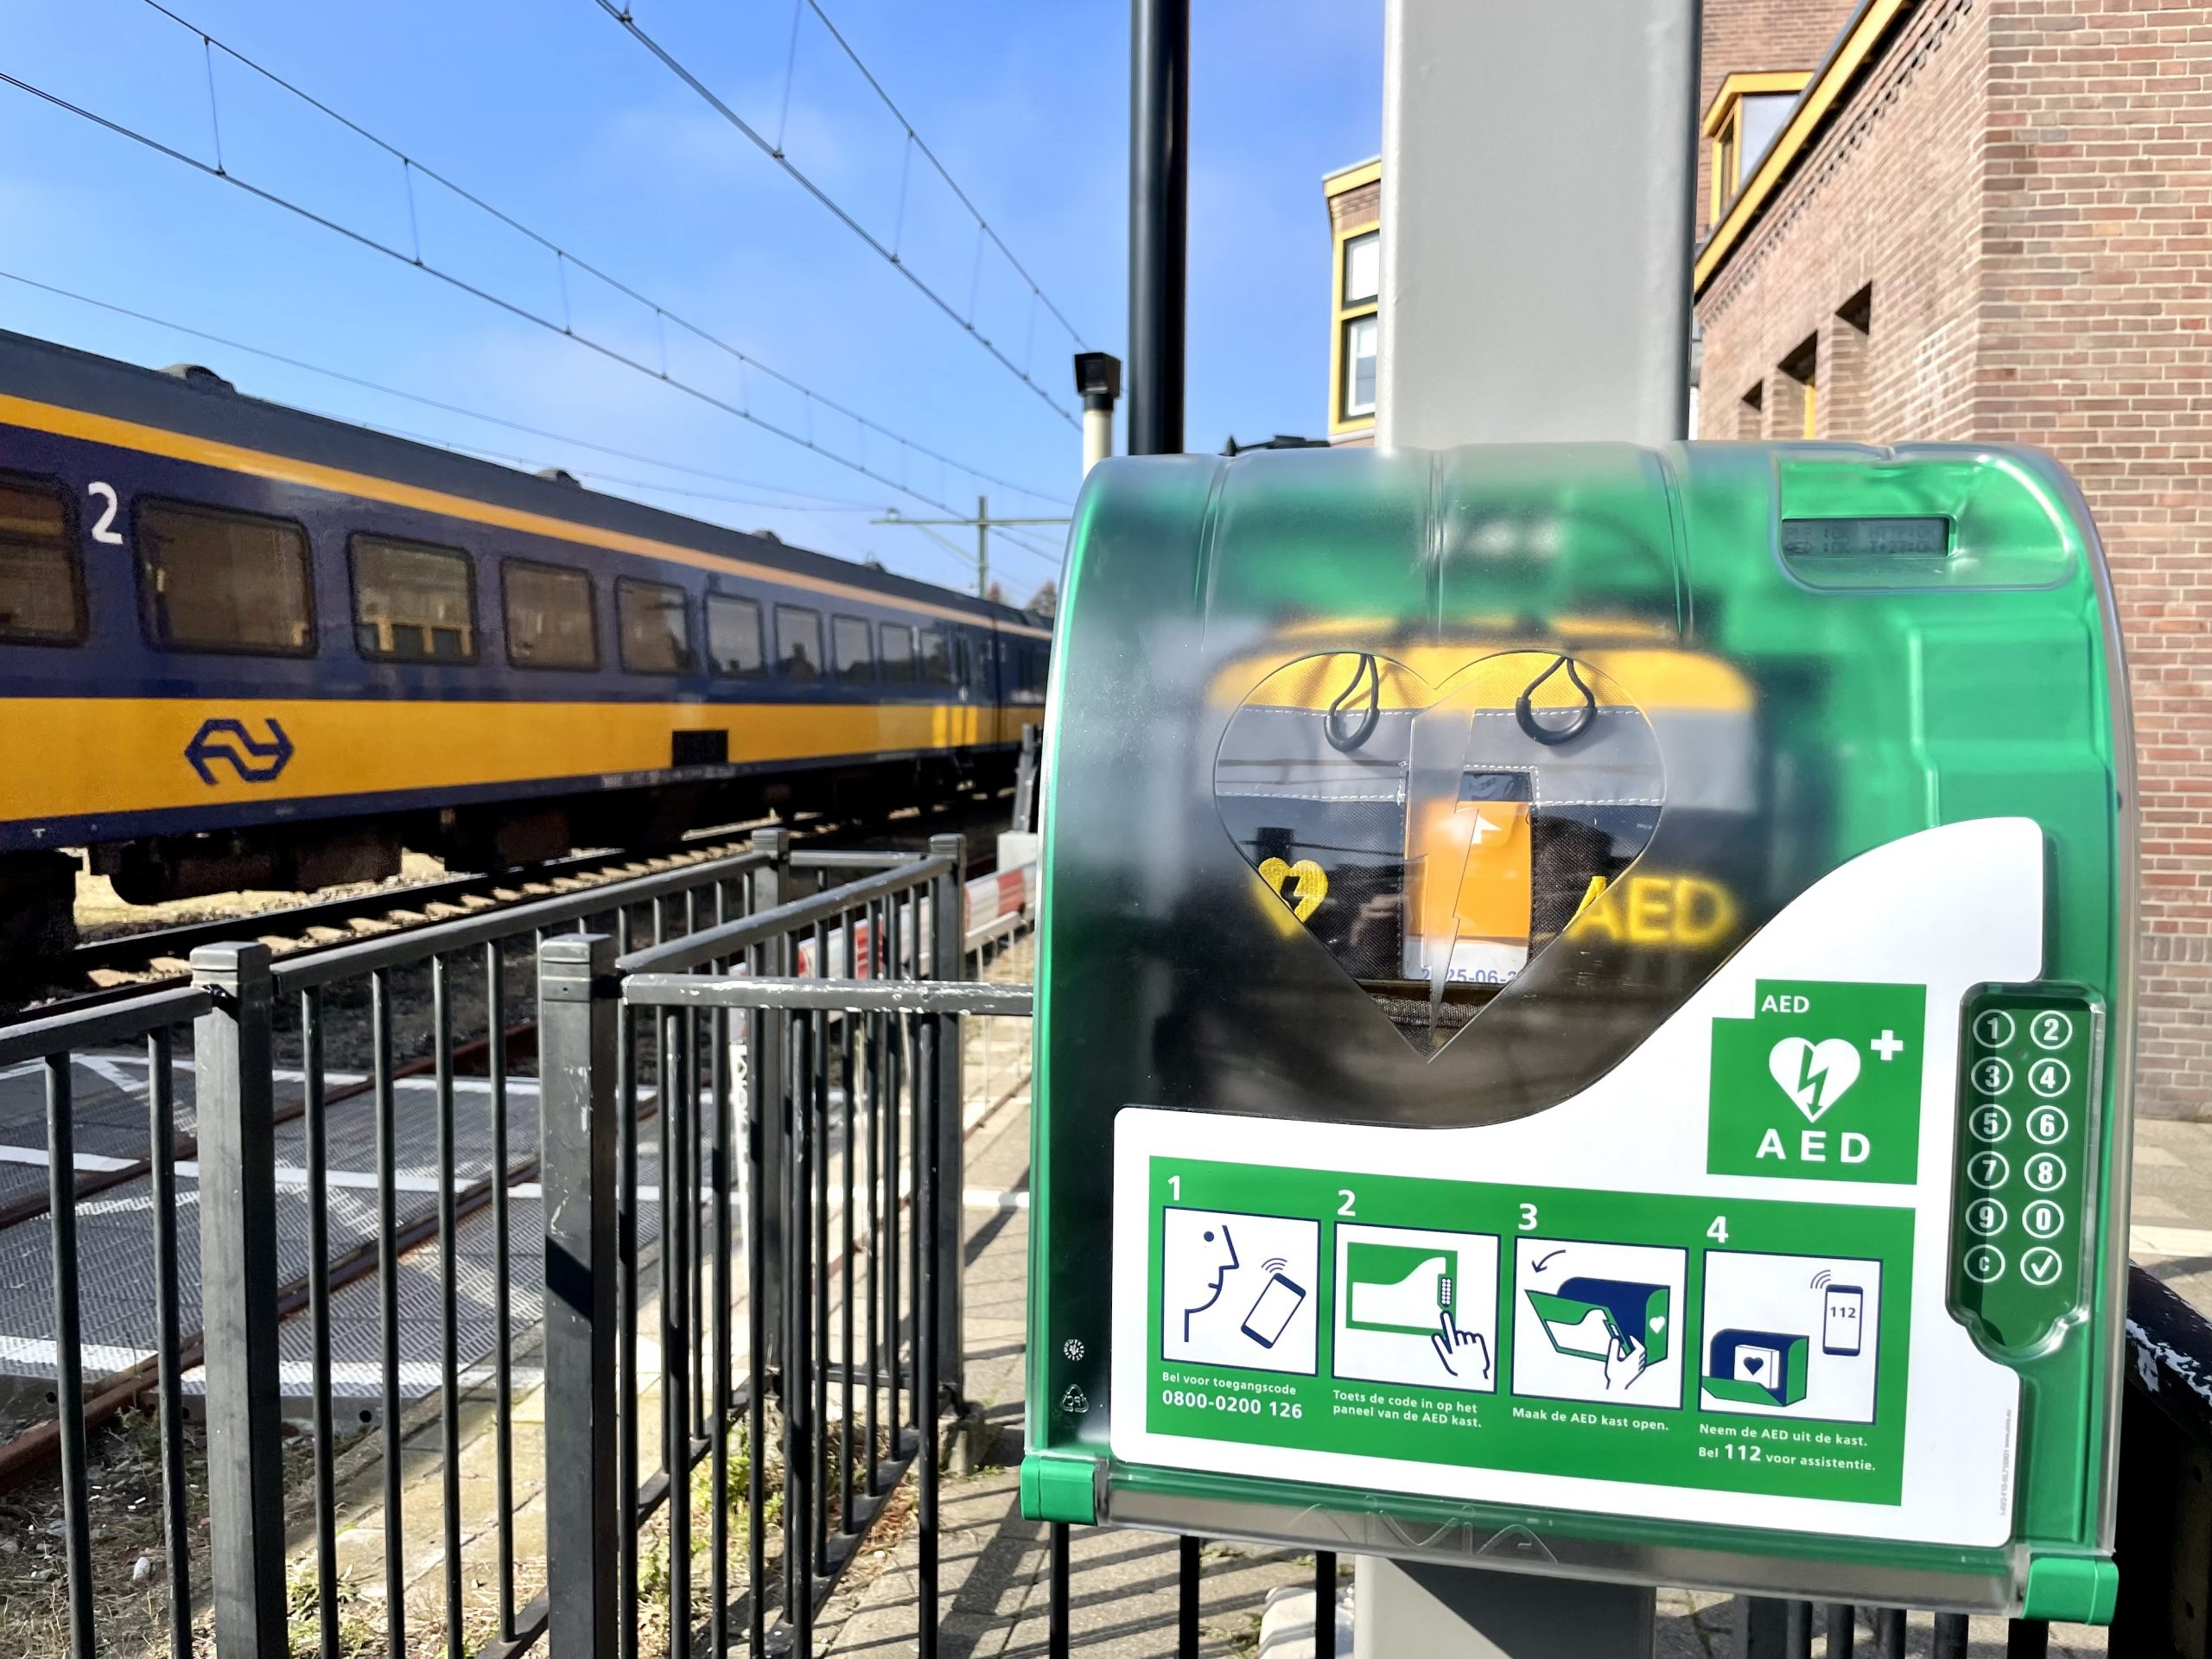 Fler och fler stationer i Nederländerna utrustade med AED